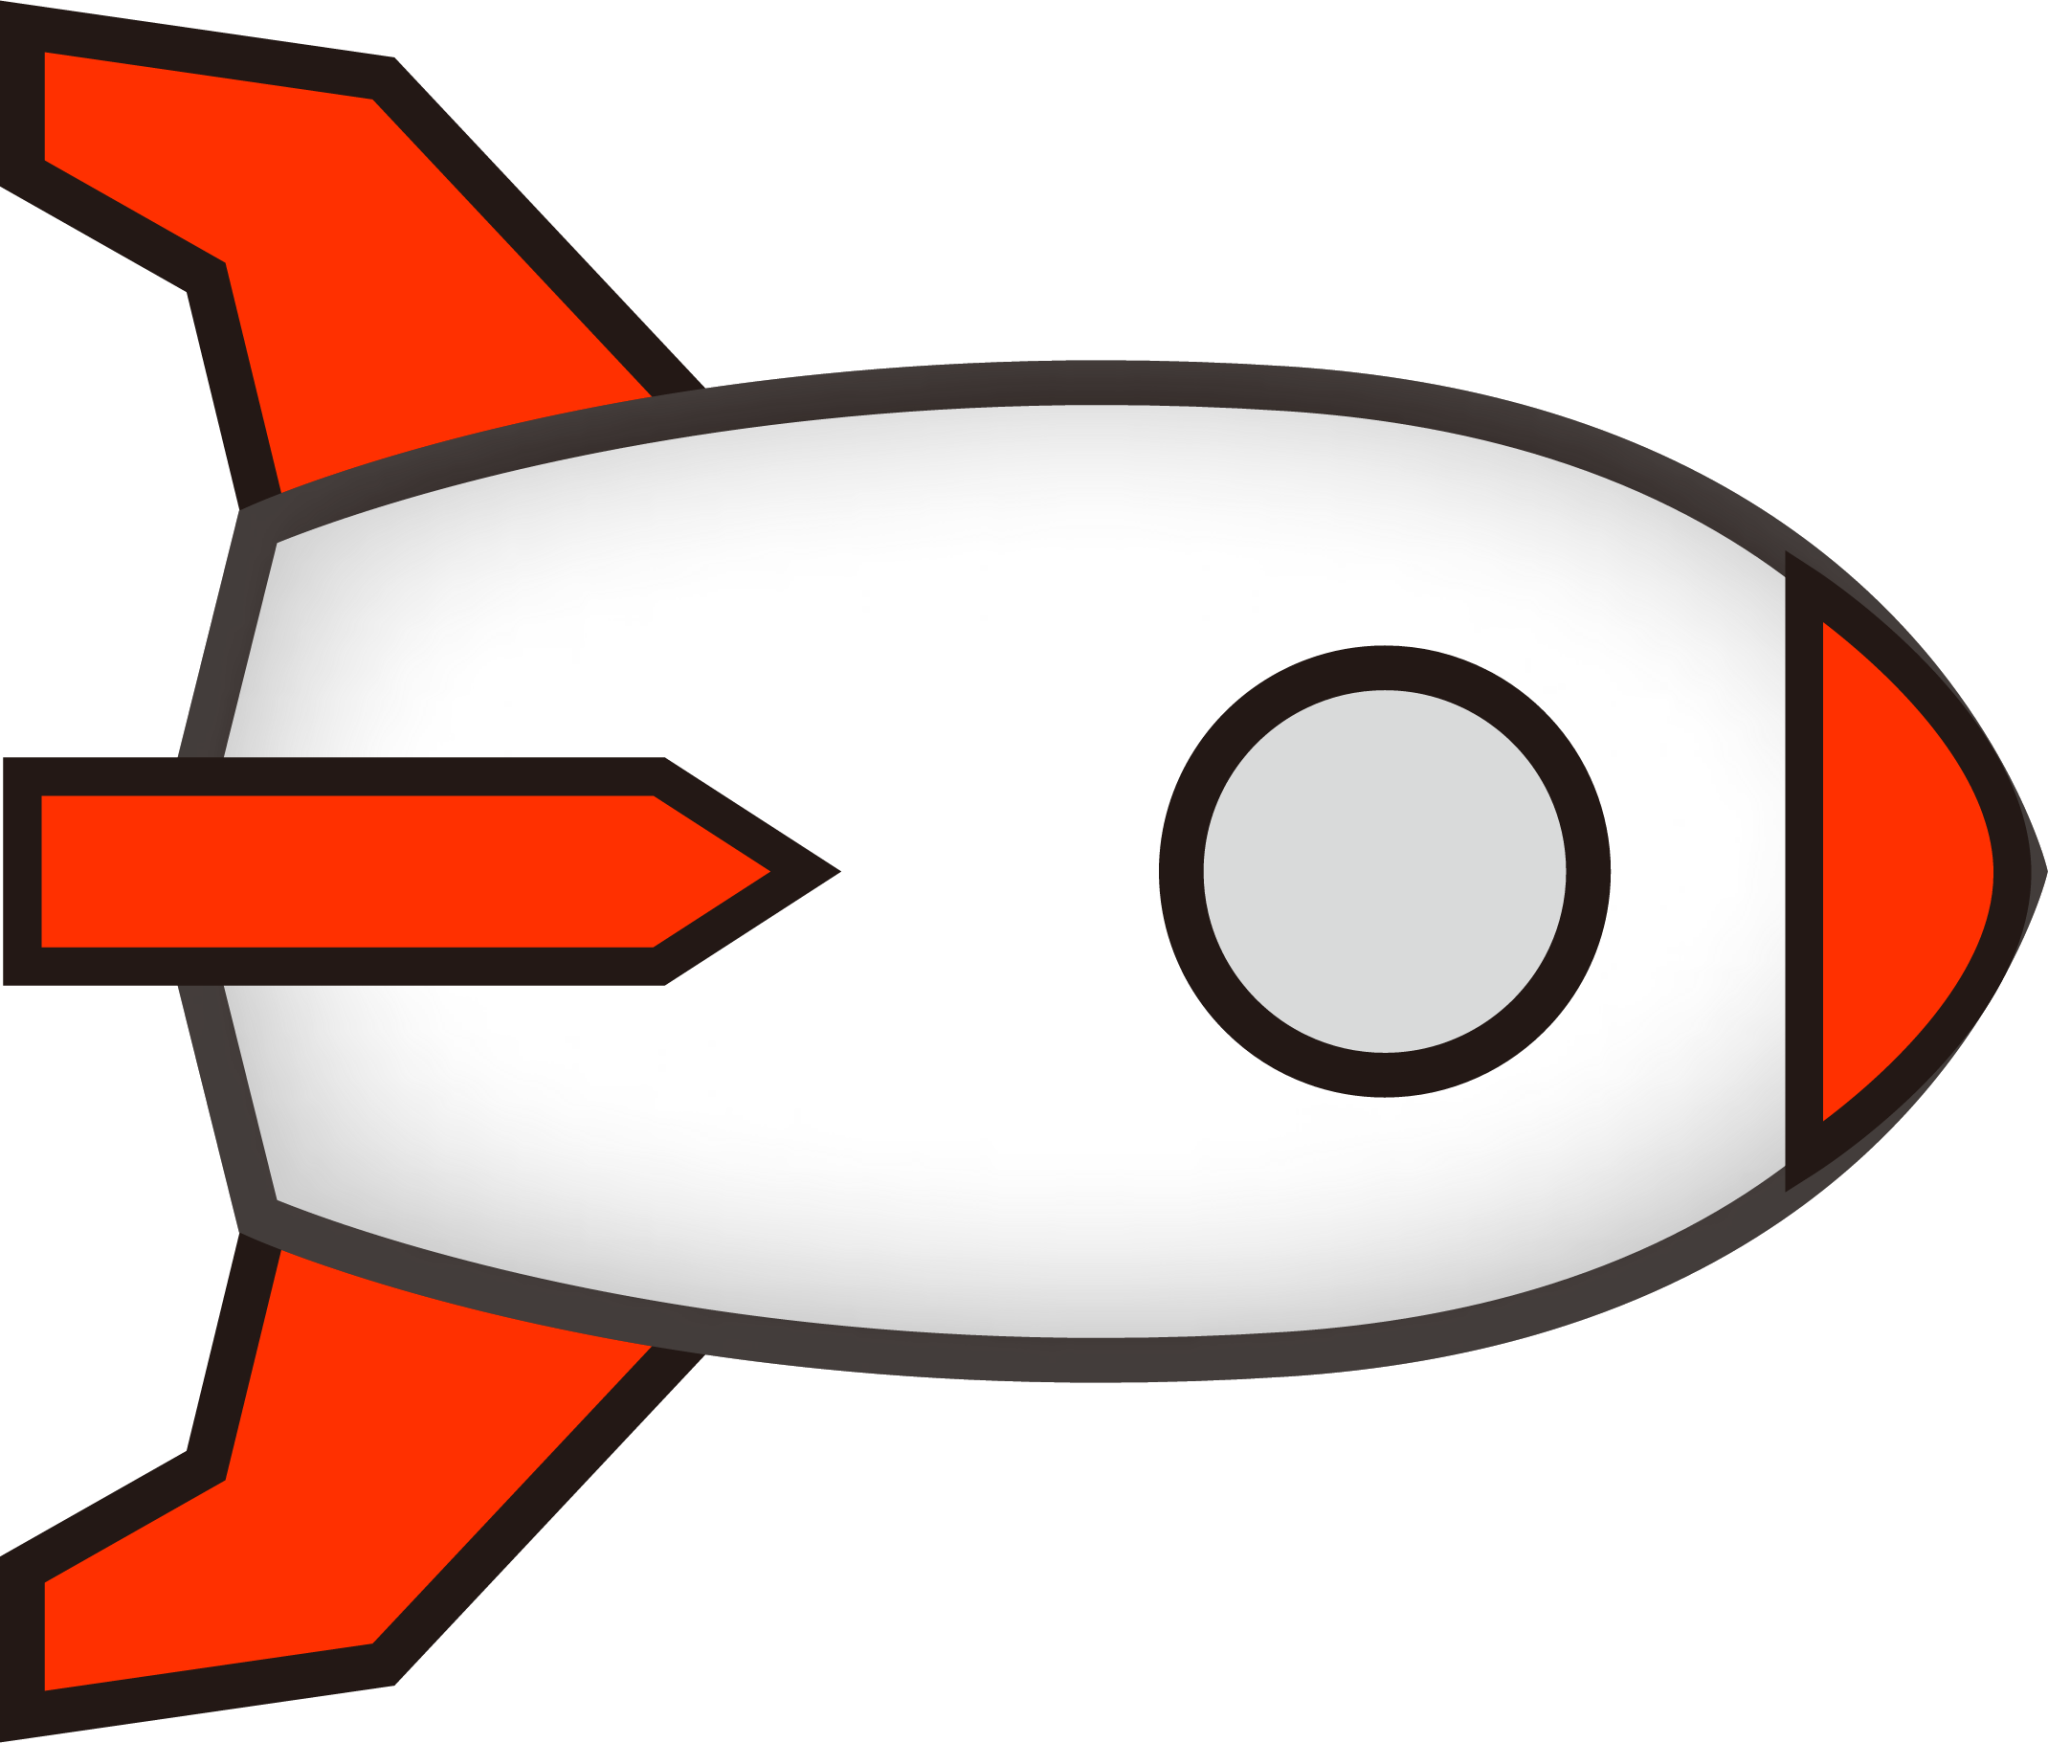 rightwards rocket (simple) emoji